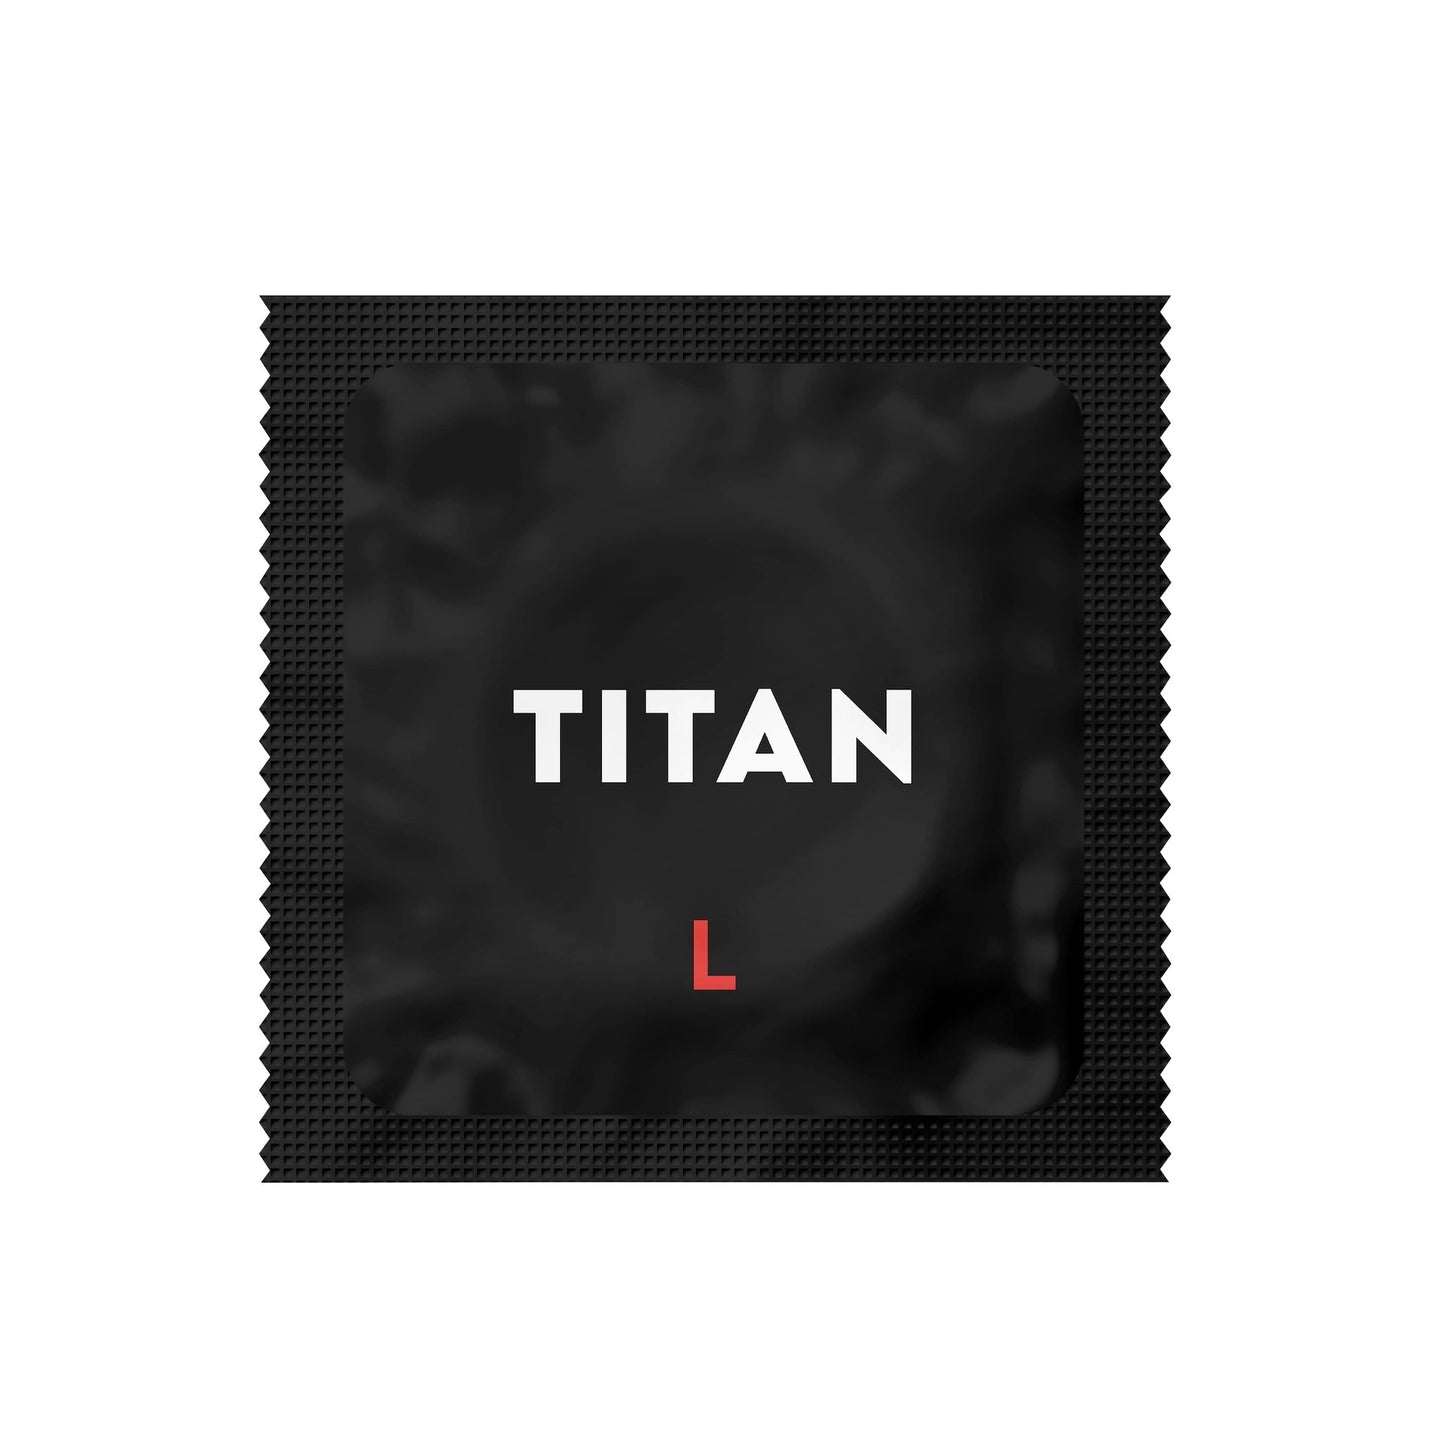 TITAN L